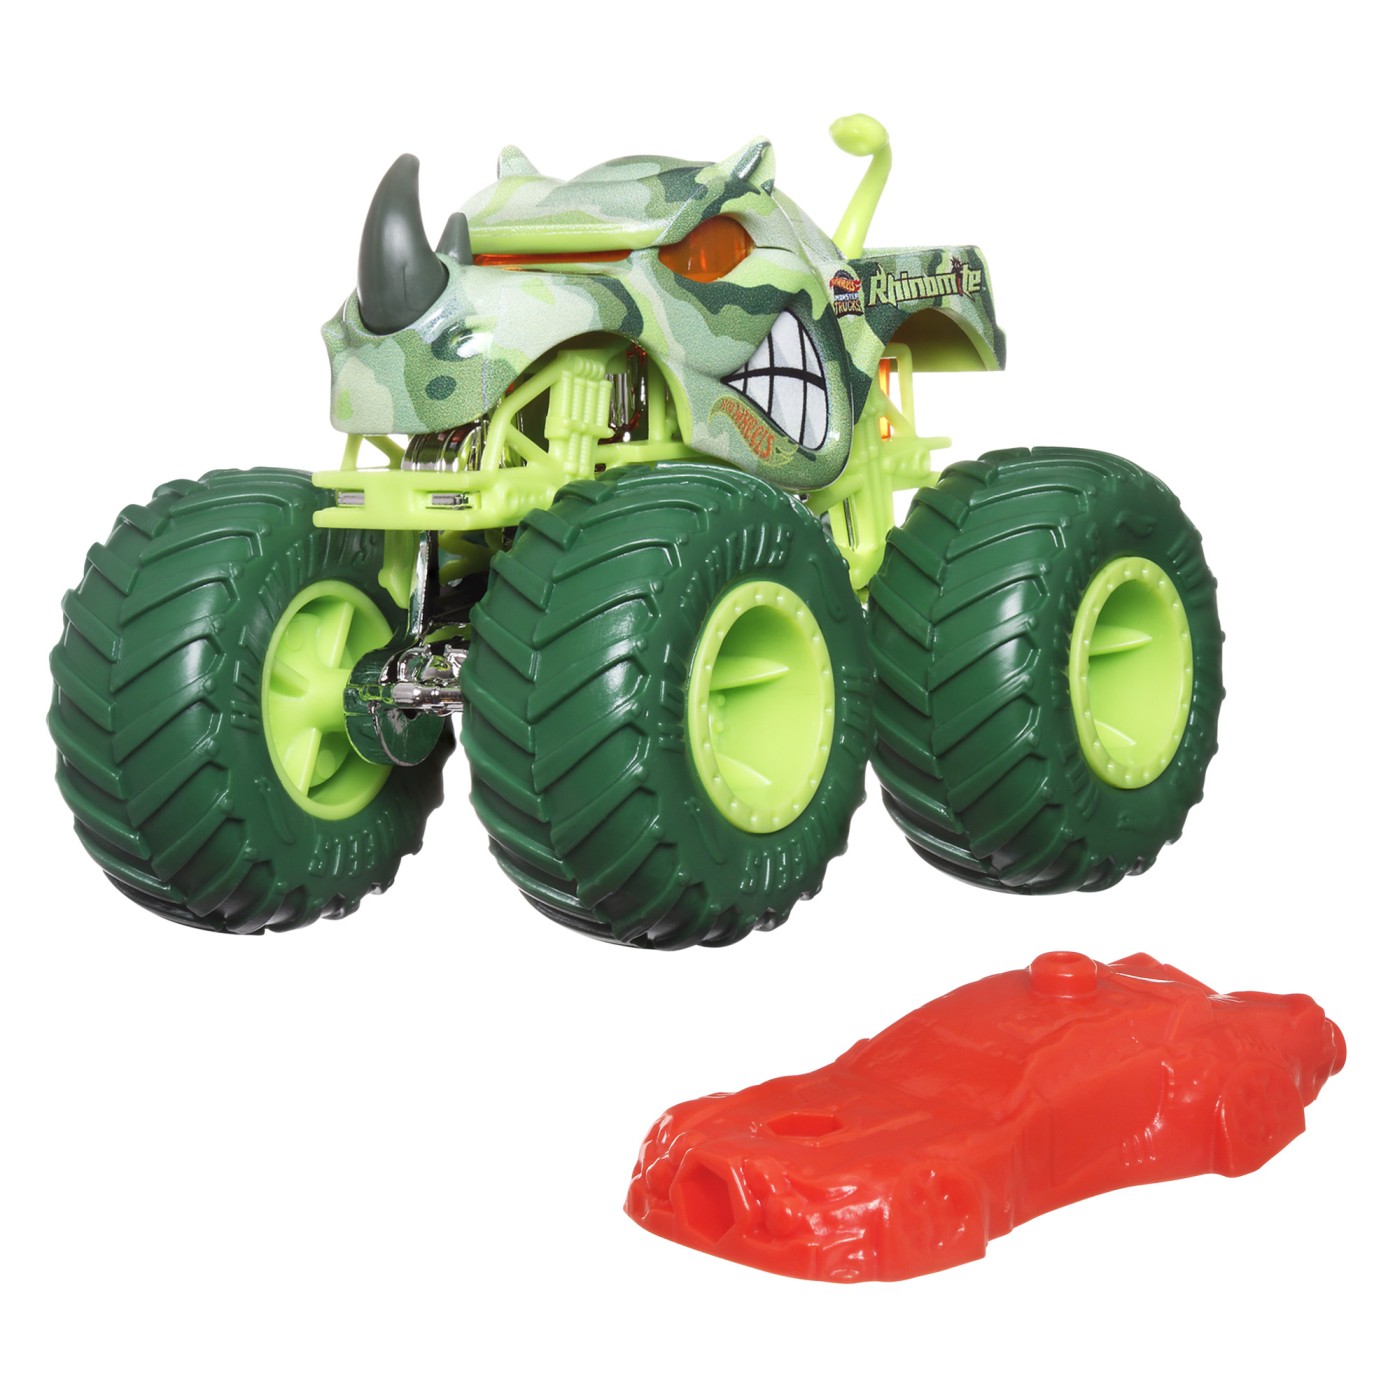 Jucarie - Masina - Hot Wheels - Rhinomite | Mattel